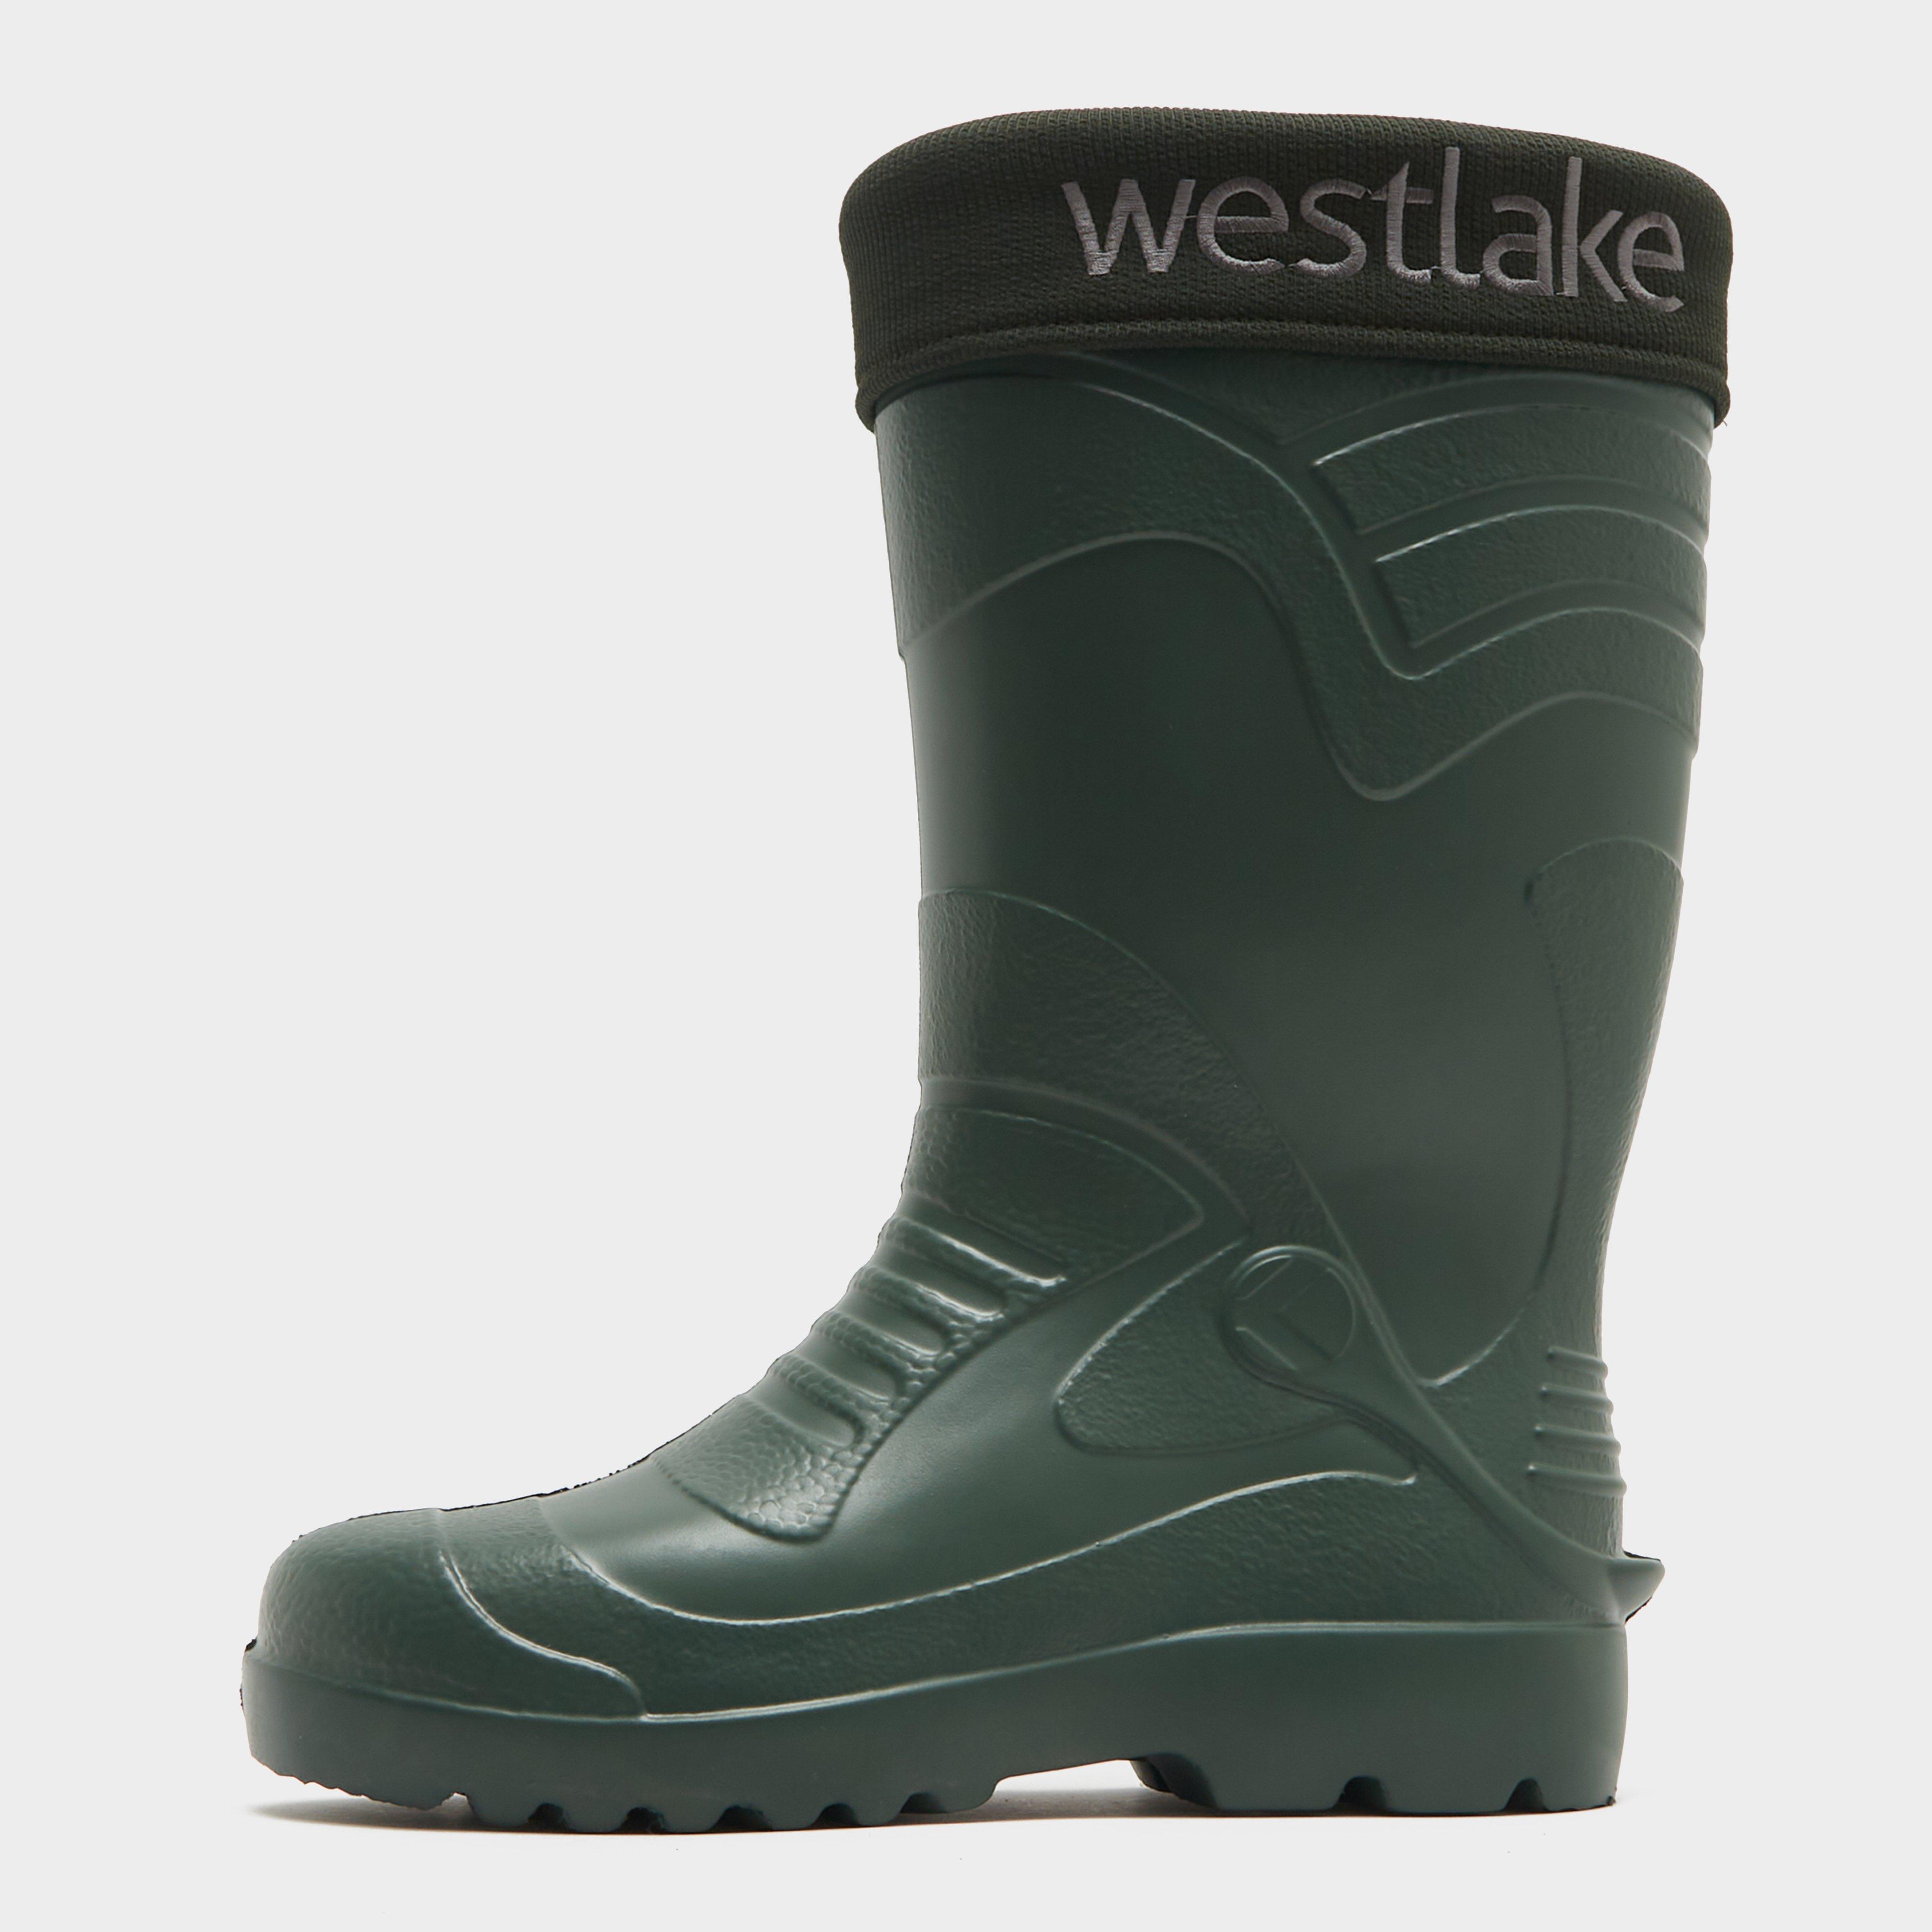 Westlake Westlake Eva Thermal Boots - Green, Green